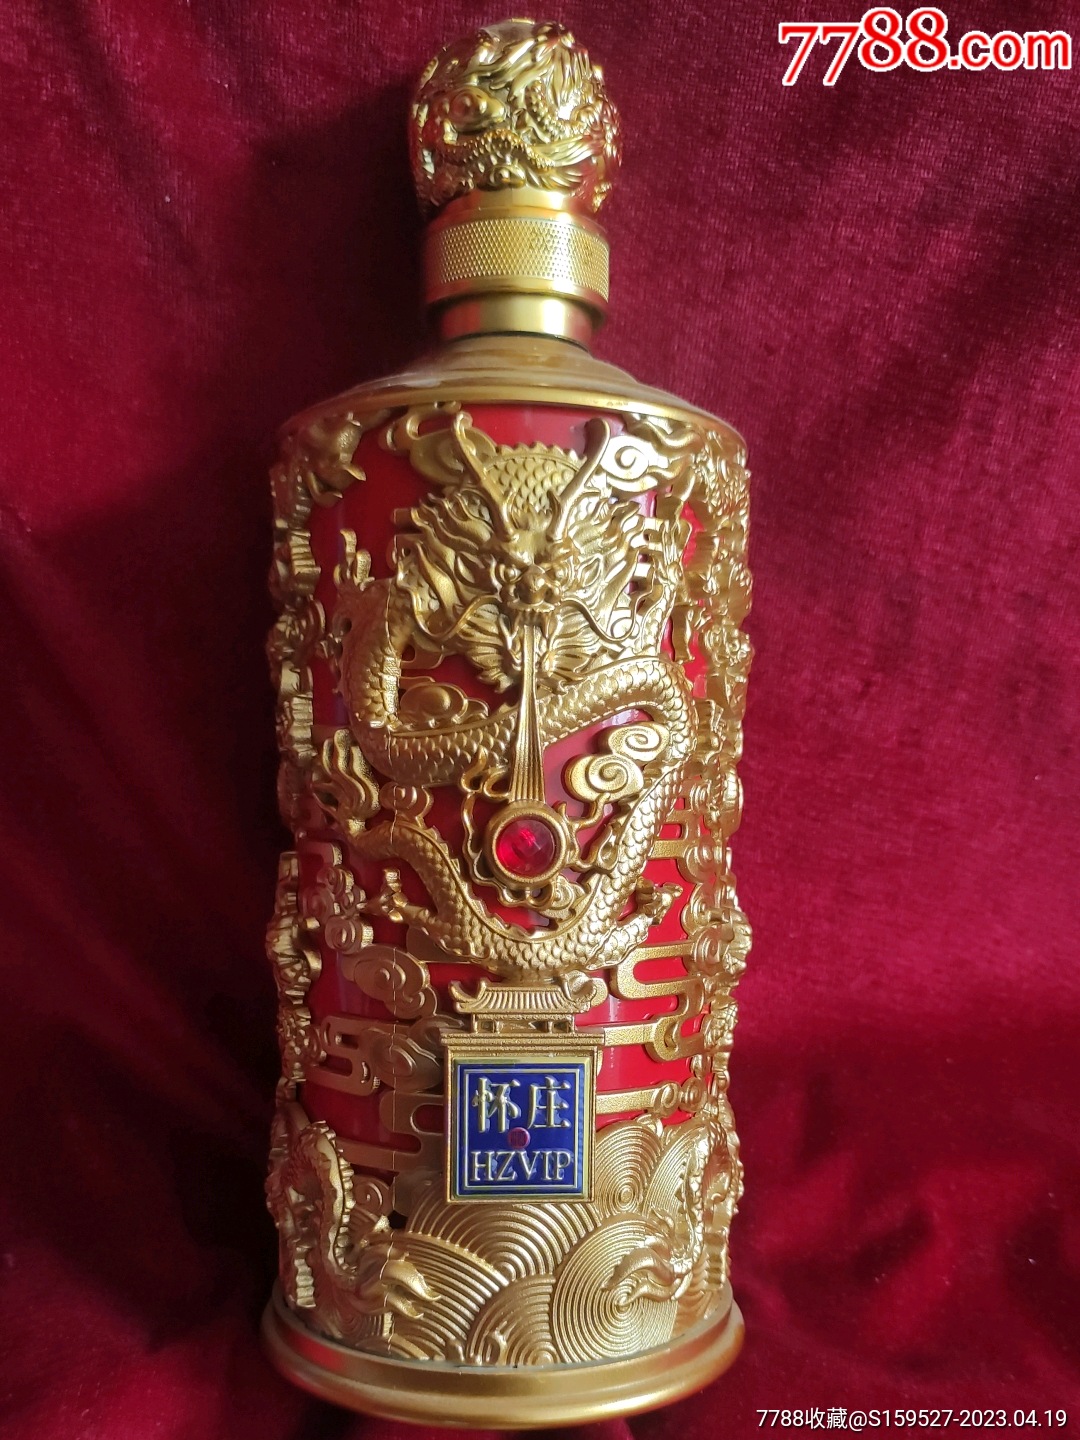 这是一个有9条龙的《怀庄酒》酒瓶,